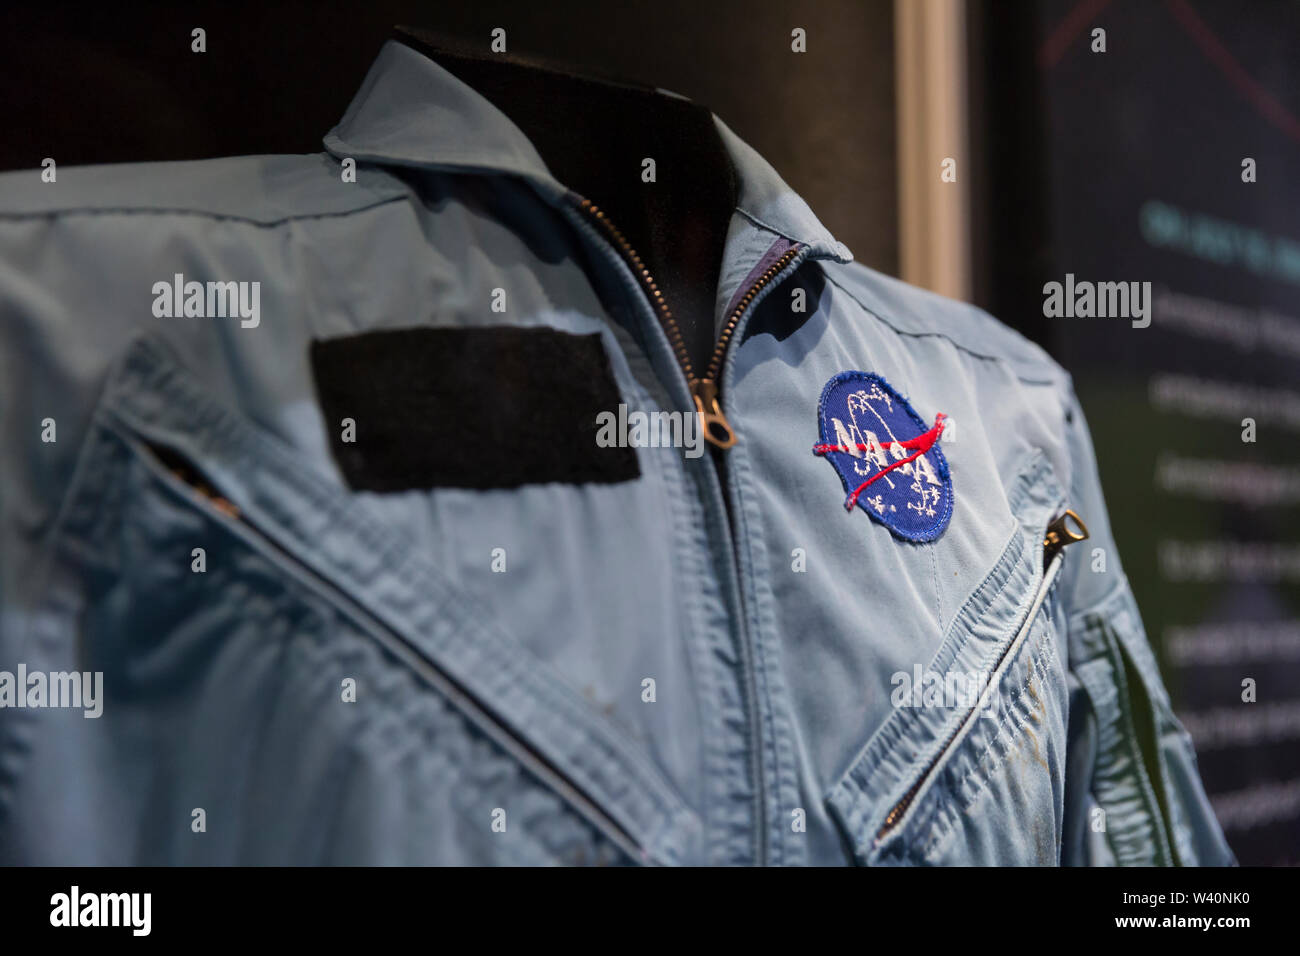 Chaqueta de vuelo de la NASA propiedad de Charles Bolden. Chaqueta de vuelo  azul con siete parches diferentes. Un parche de bandera americana aparece  en el hombro izquierdo apropiado de la chaqueta